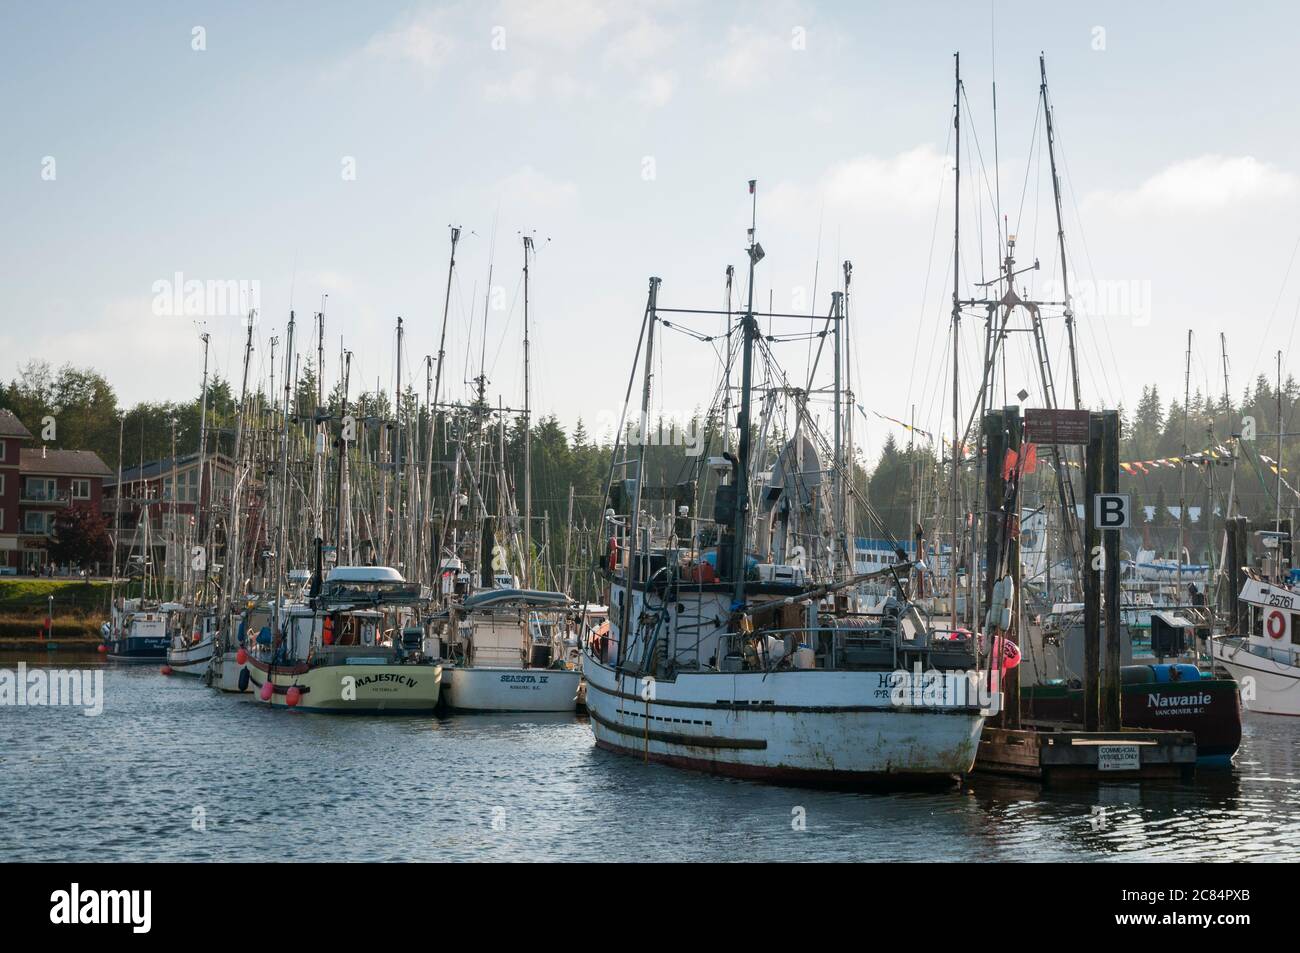 Fischerboote liegen in Ucluelet Harbour, Vancouver Island, British Columbia, Kanada. Stockfoto